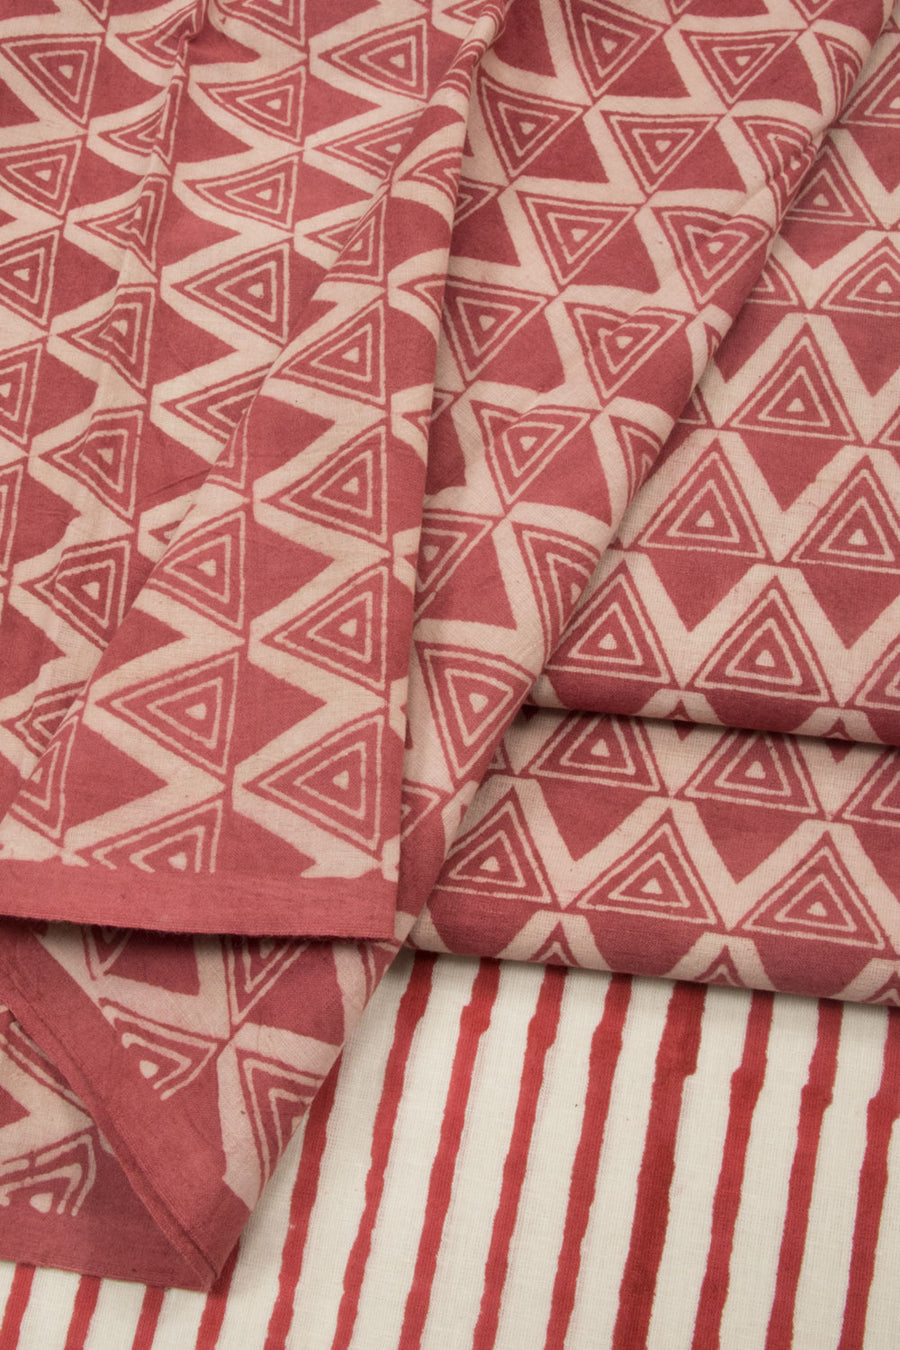 Red Dabu Printed Cotton Salwar Suit Material  - Avishya